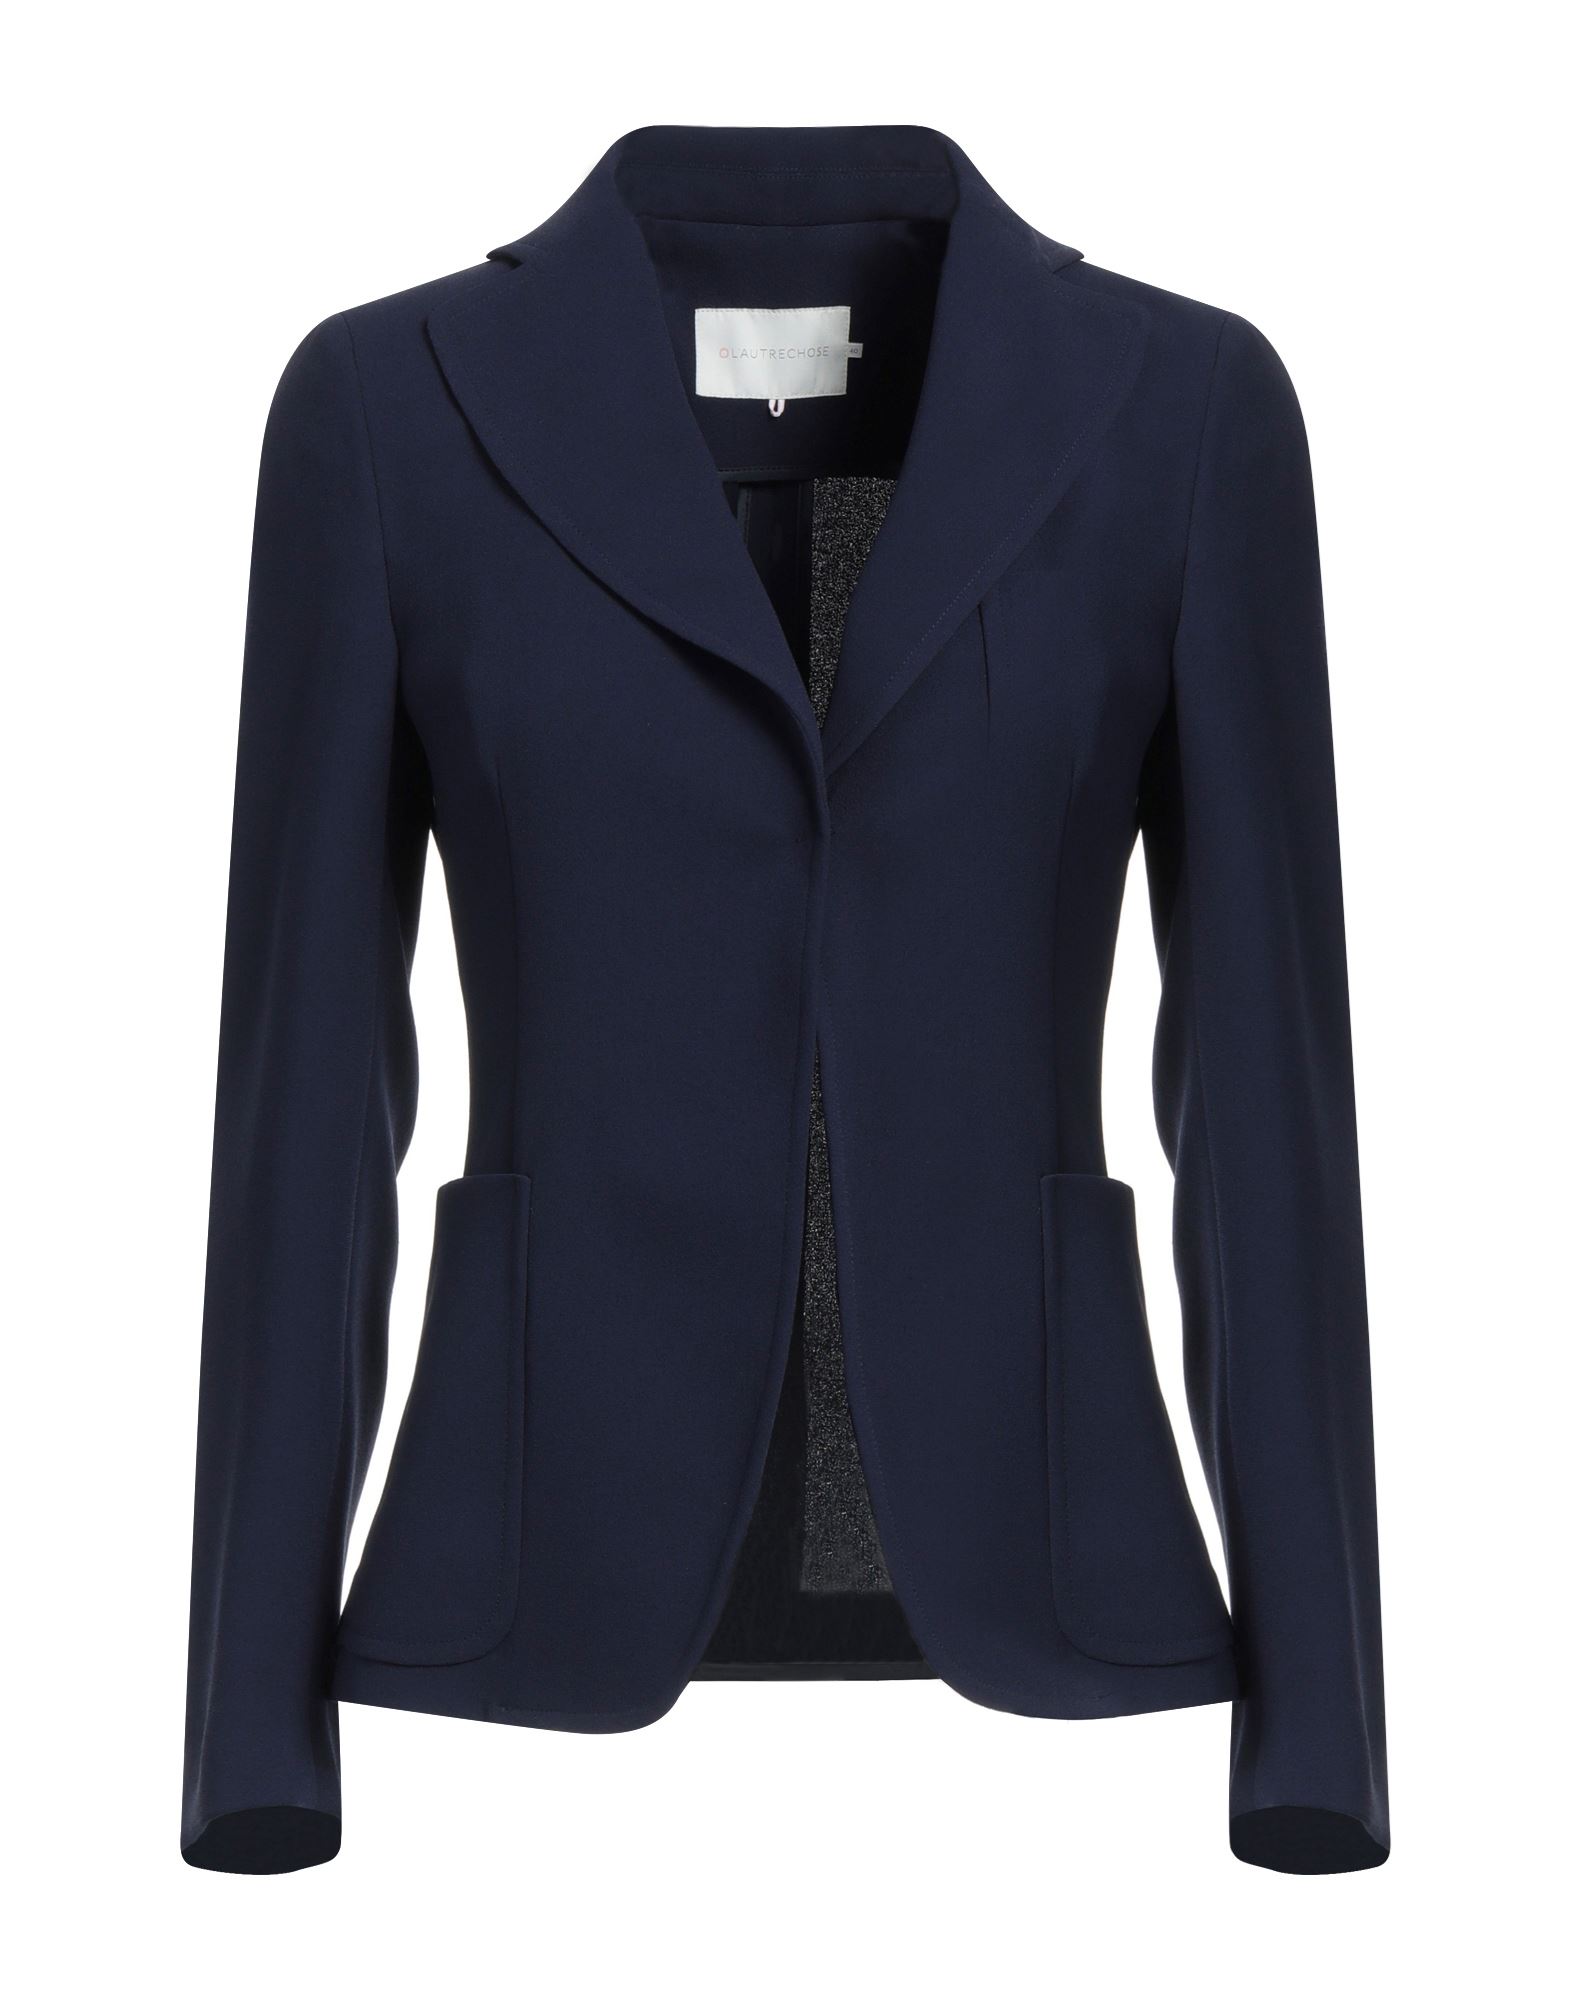 L'autre Chose L' Autre Chose Woman Suit Jacket Midnight Blue Size 8 Polyester